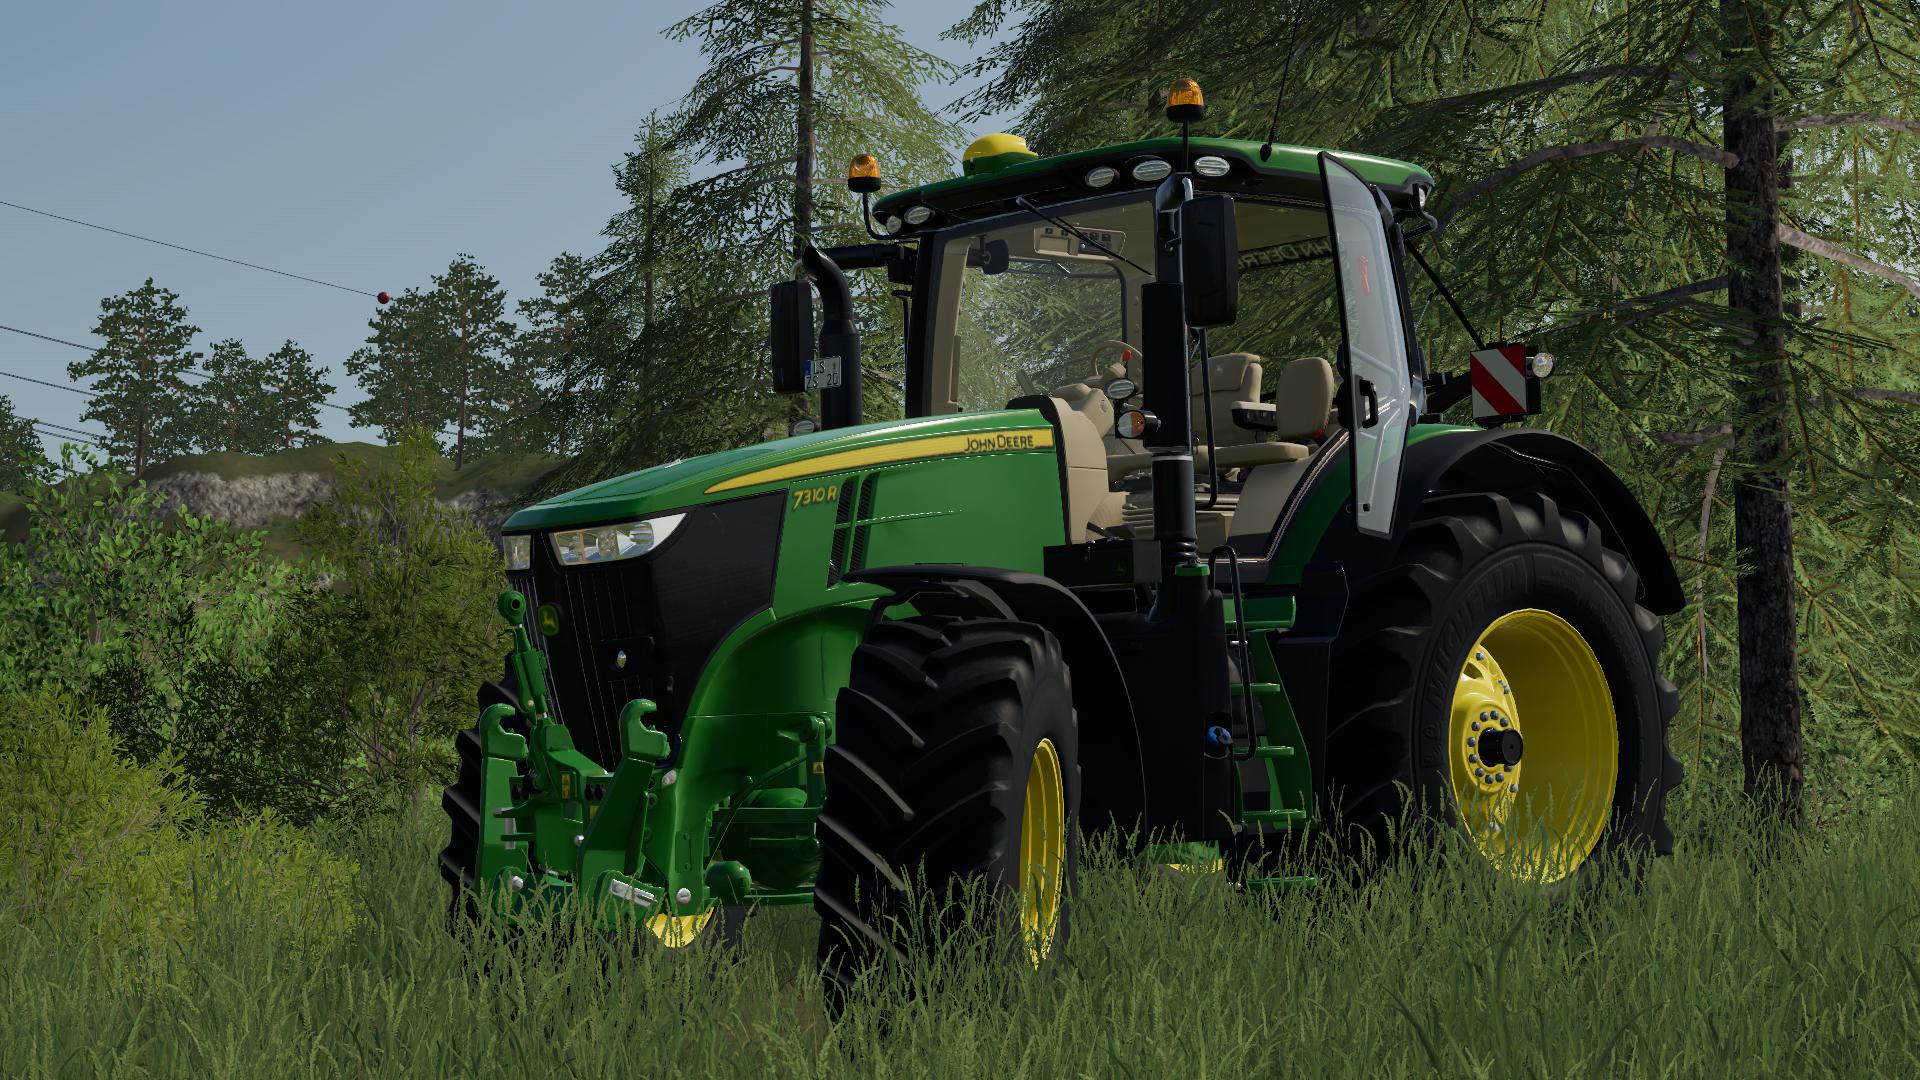 John Deere 7r Forest V10 Fs19 Farming Simulator 19 Mod Fs19 Mod Images And Photos Finder 5622